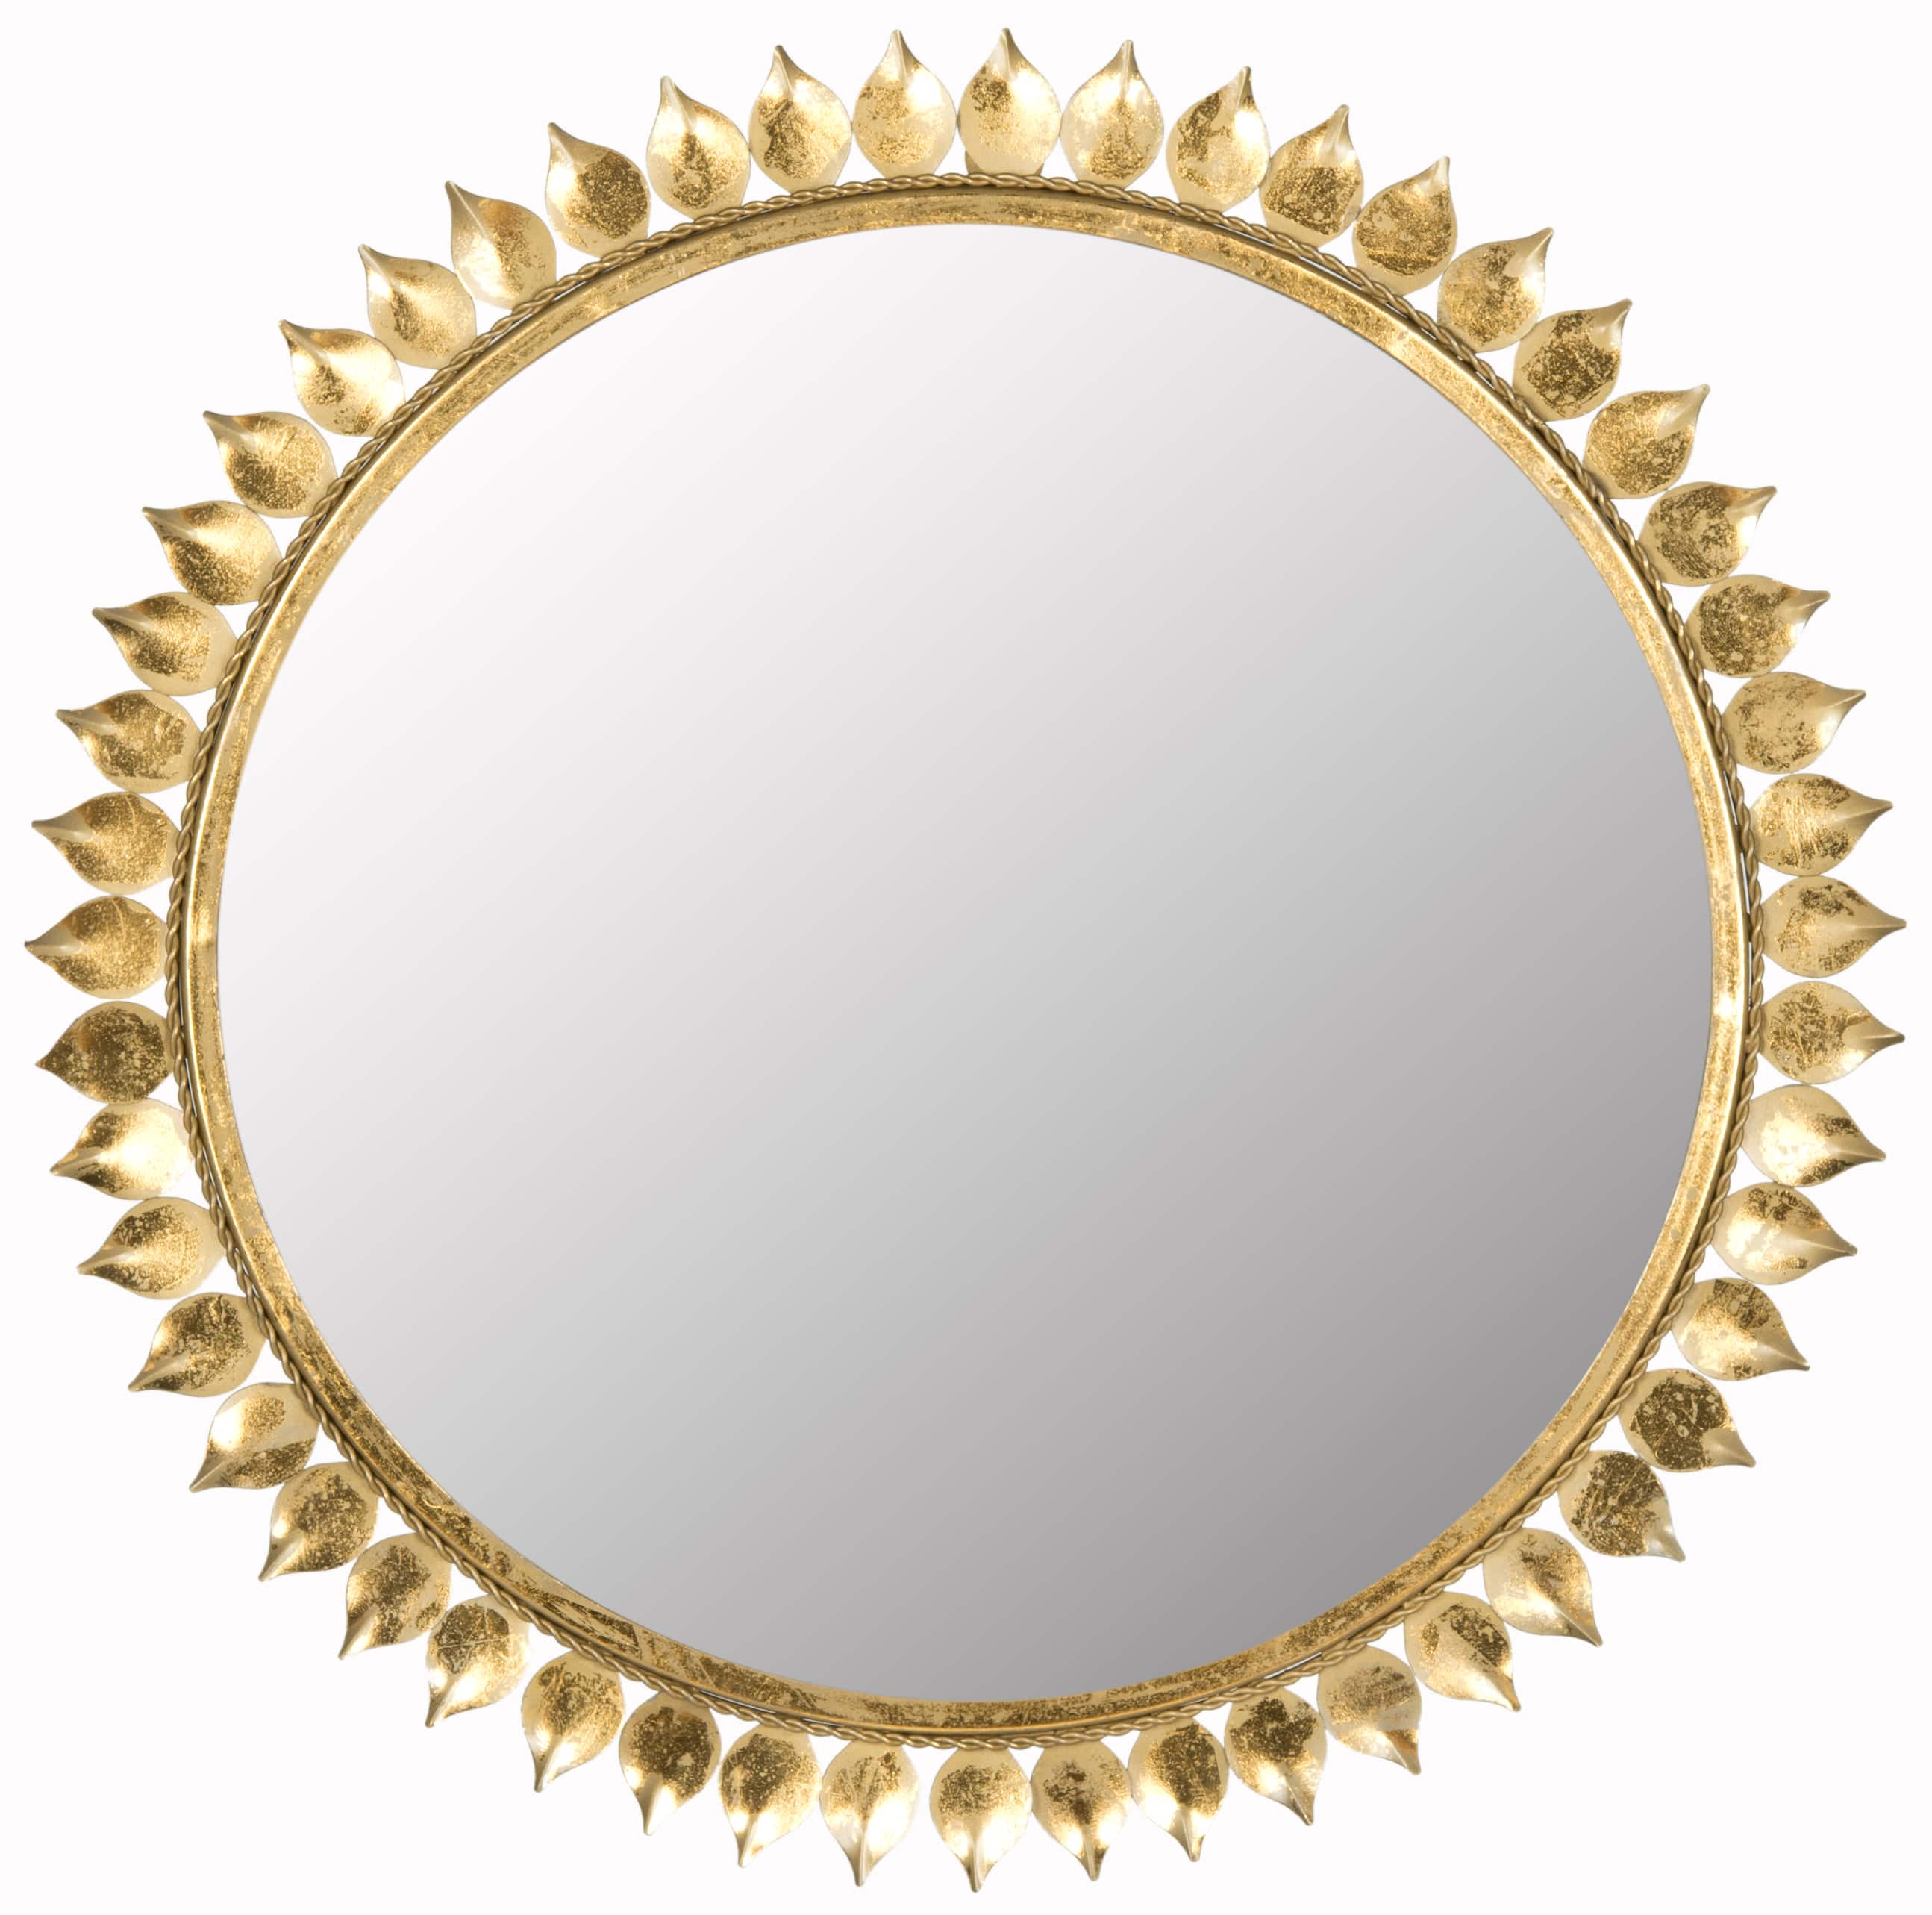 Leaf Crown Sunburst Mirror in Antique Gold